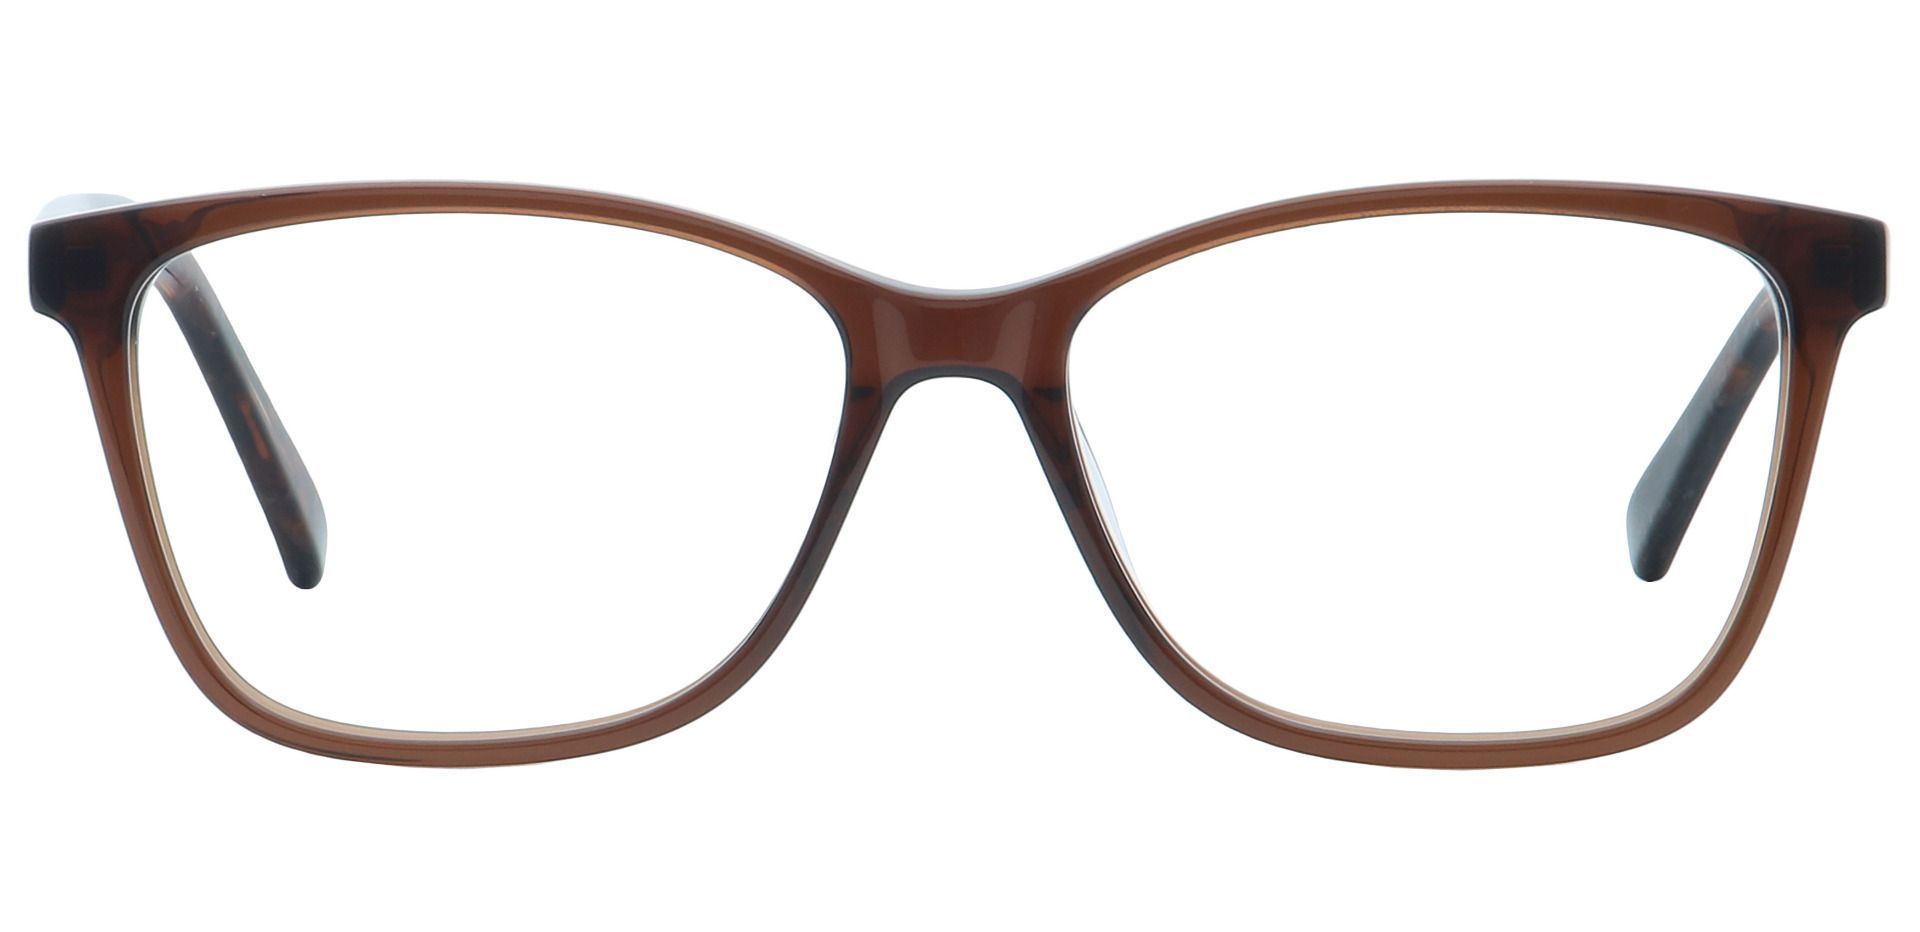 Casper Rectangle Prescription Glasses - Brown